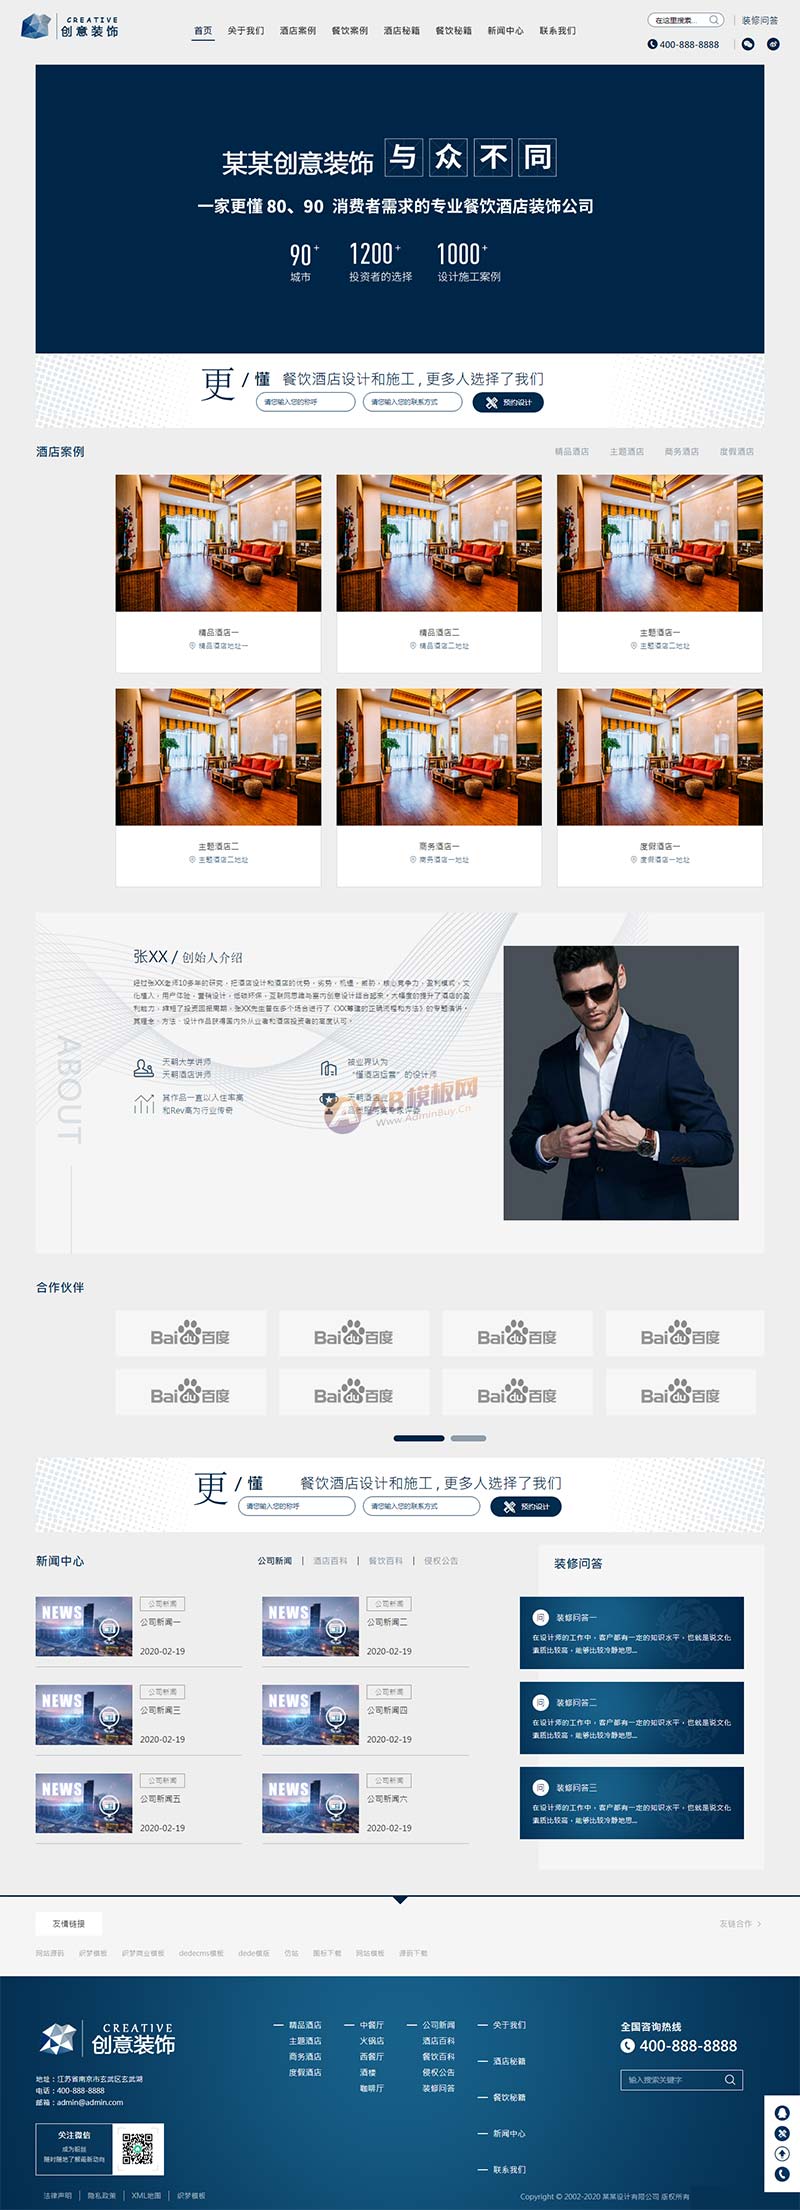 (自适应手机版)html5蓝色餐饮酒店设计网站源码 响应式创意餐饮酒店装饰设计类网站pbootcms模板